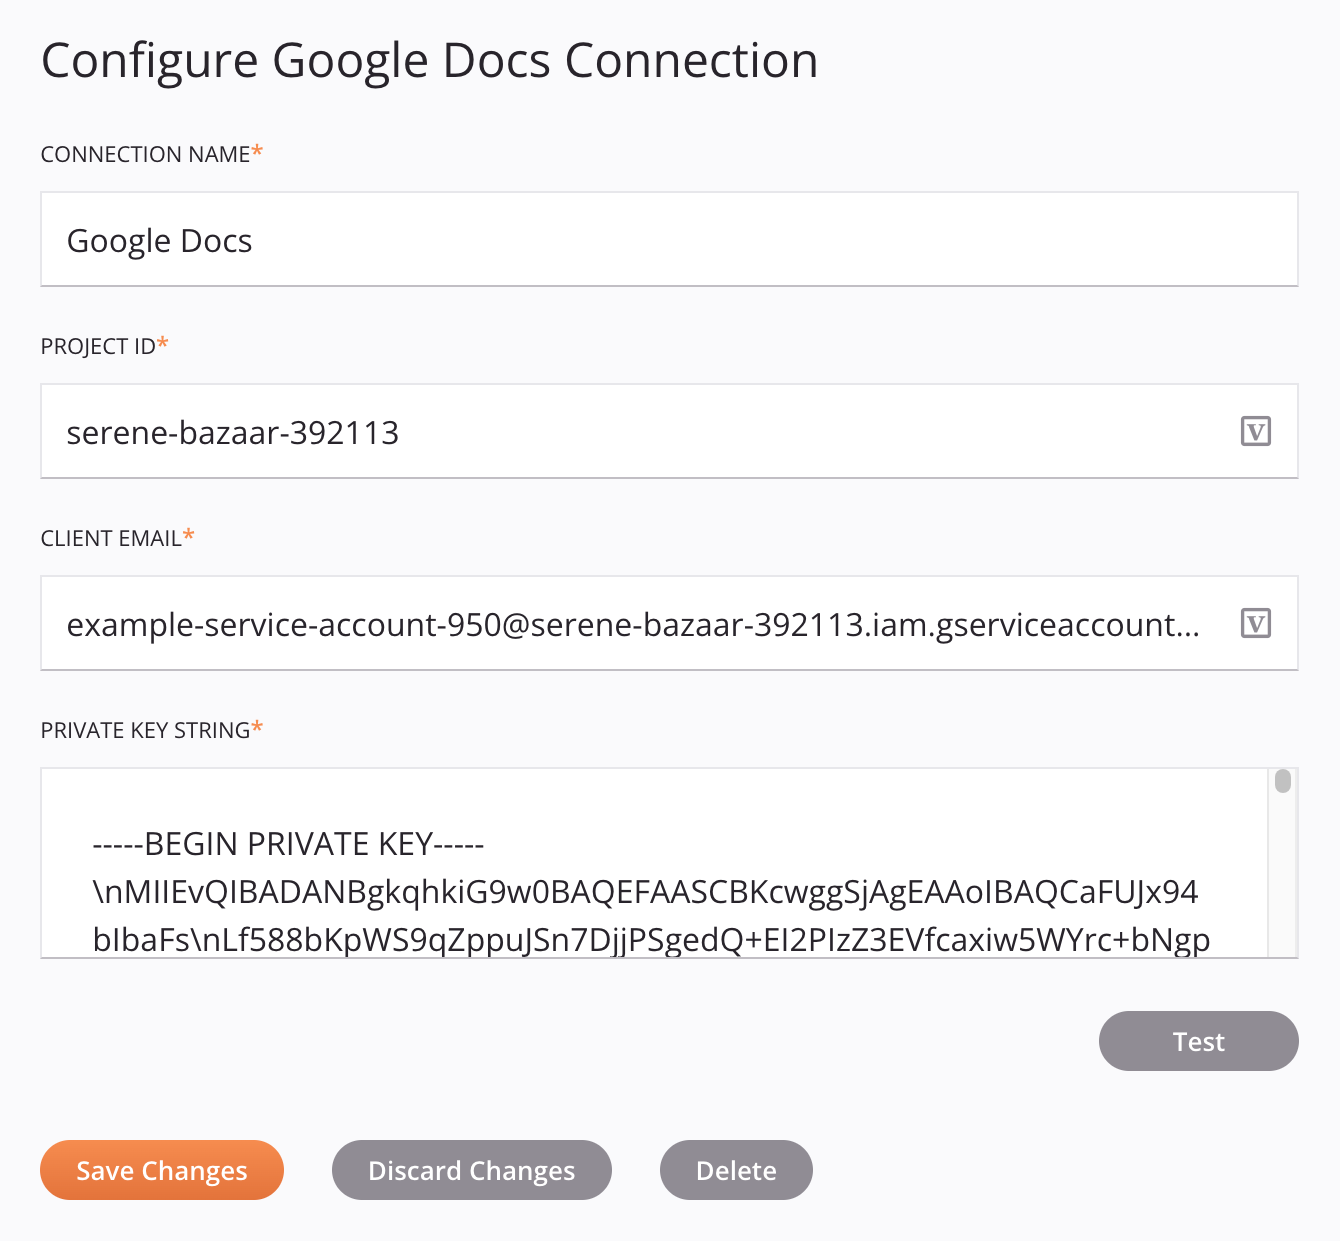 Google Docs connection configuration